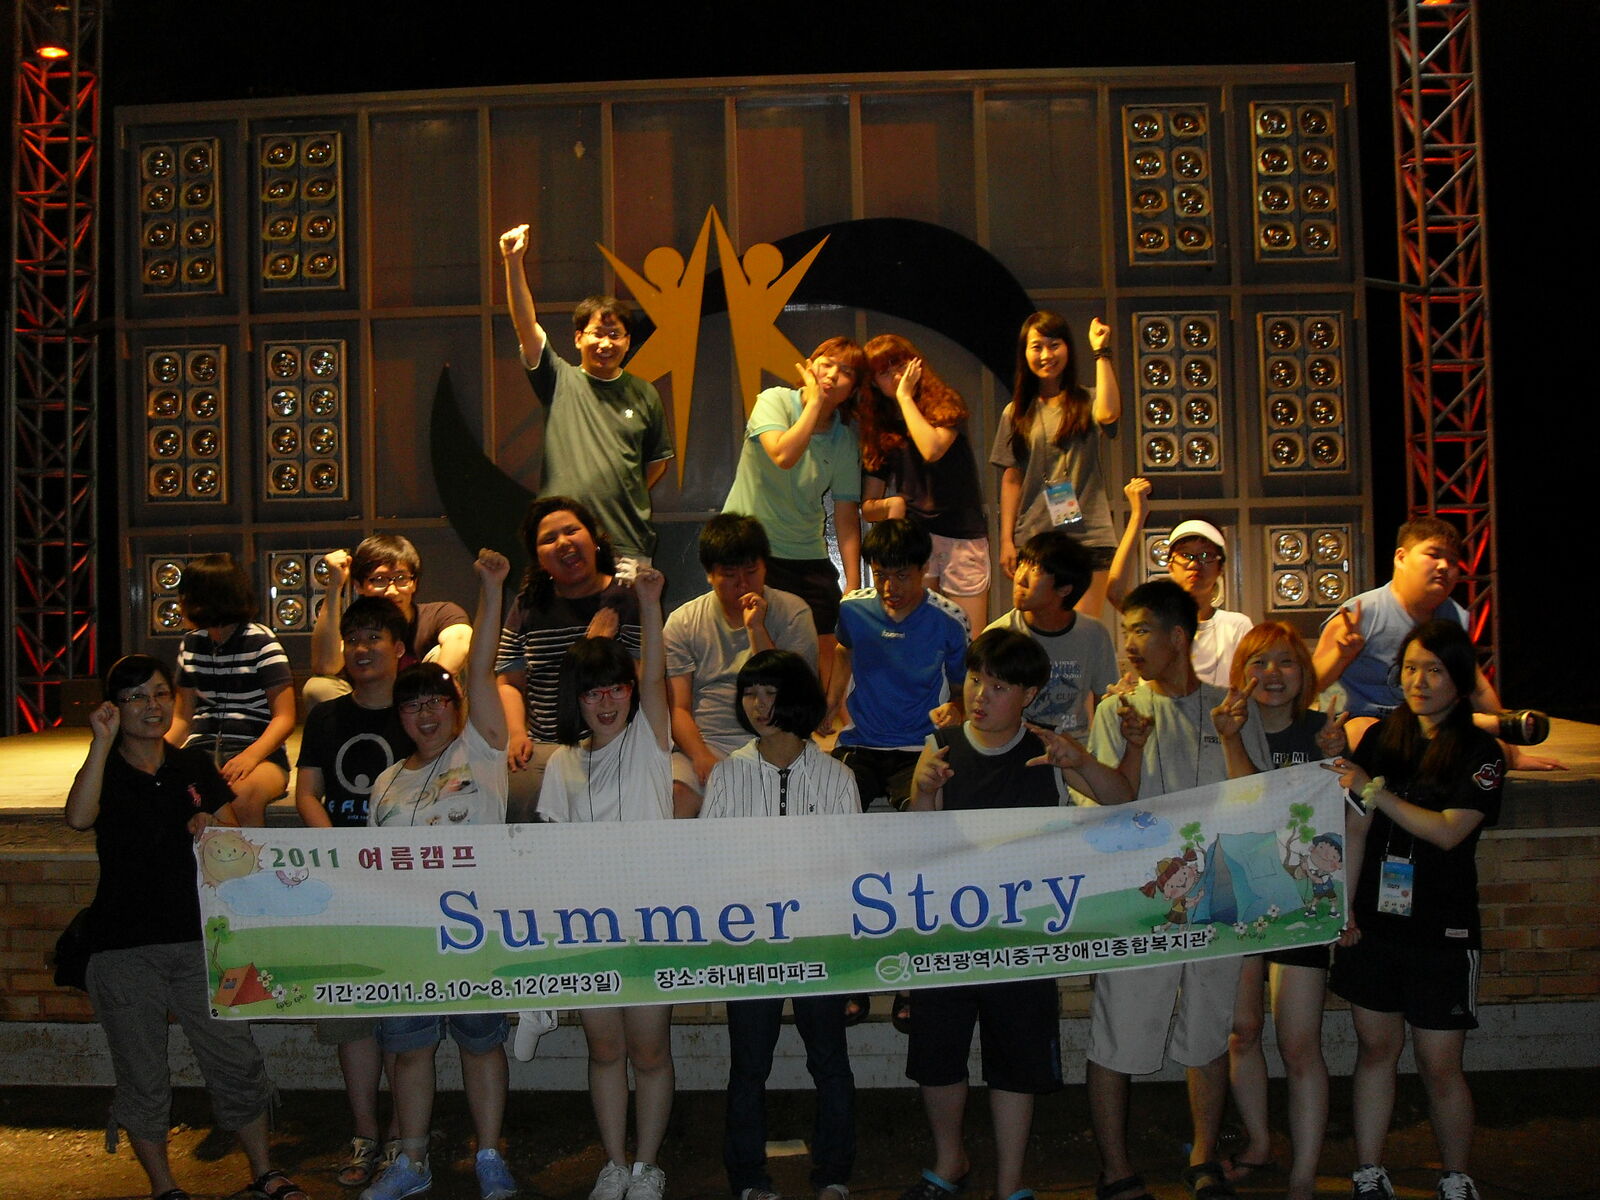 2011 여름캠프 summer story